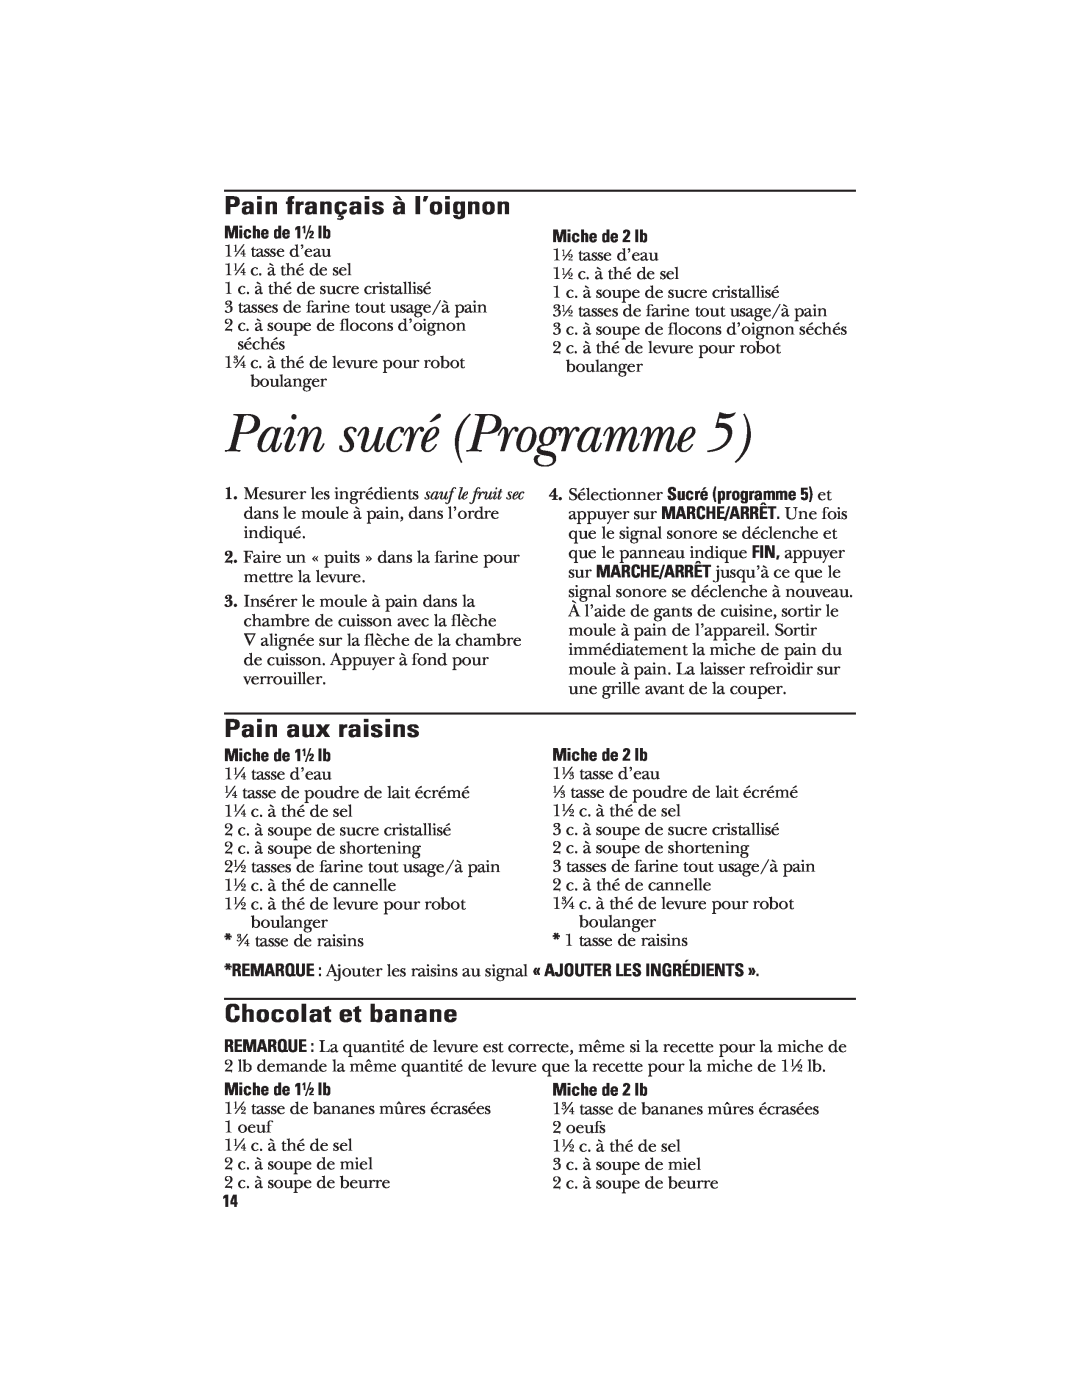 GE 106732 Pain sucré Programme, Pain français à l’oignon, Pain aux raisins, Chocolat et banane, Miche de 1 1⁄ 2 lb 